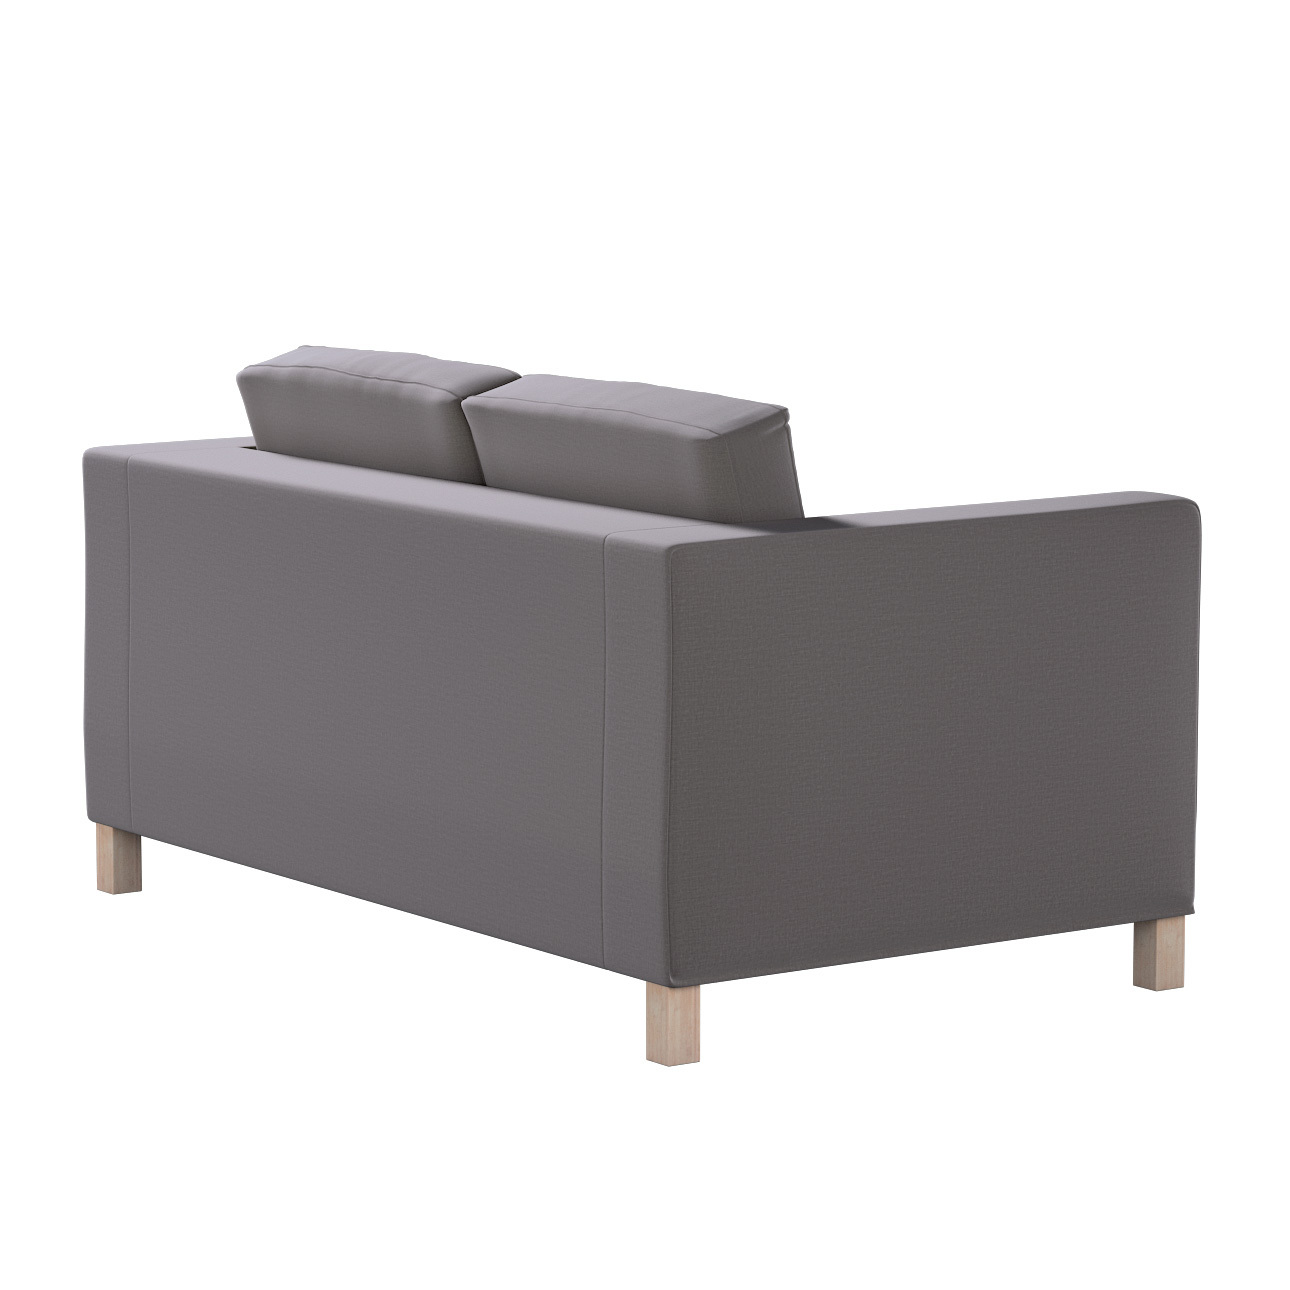 Bezug für Karlanda 2-Sitzer Sofa nicht ausklappbar, kurz, braun, 60cm x 30c günstig online kaufen